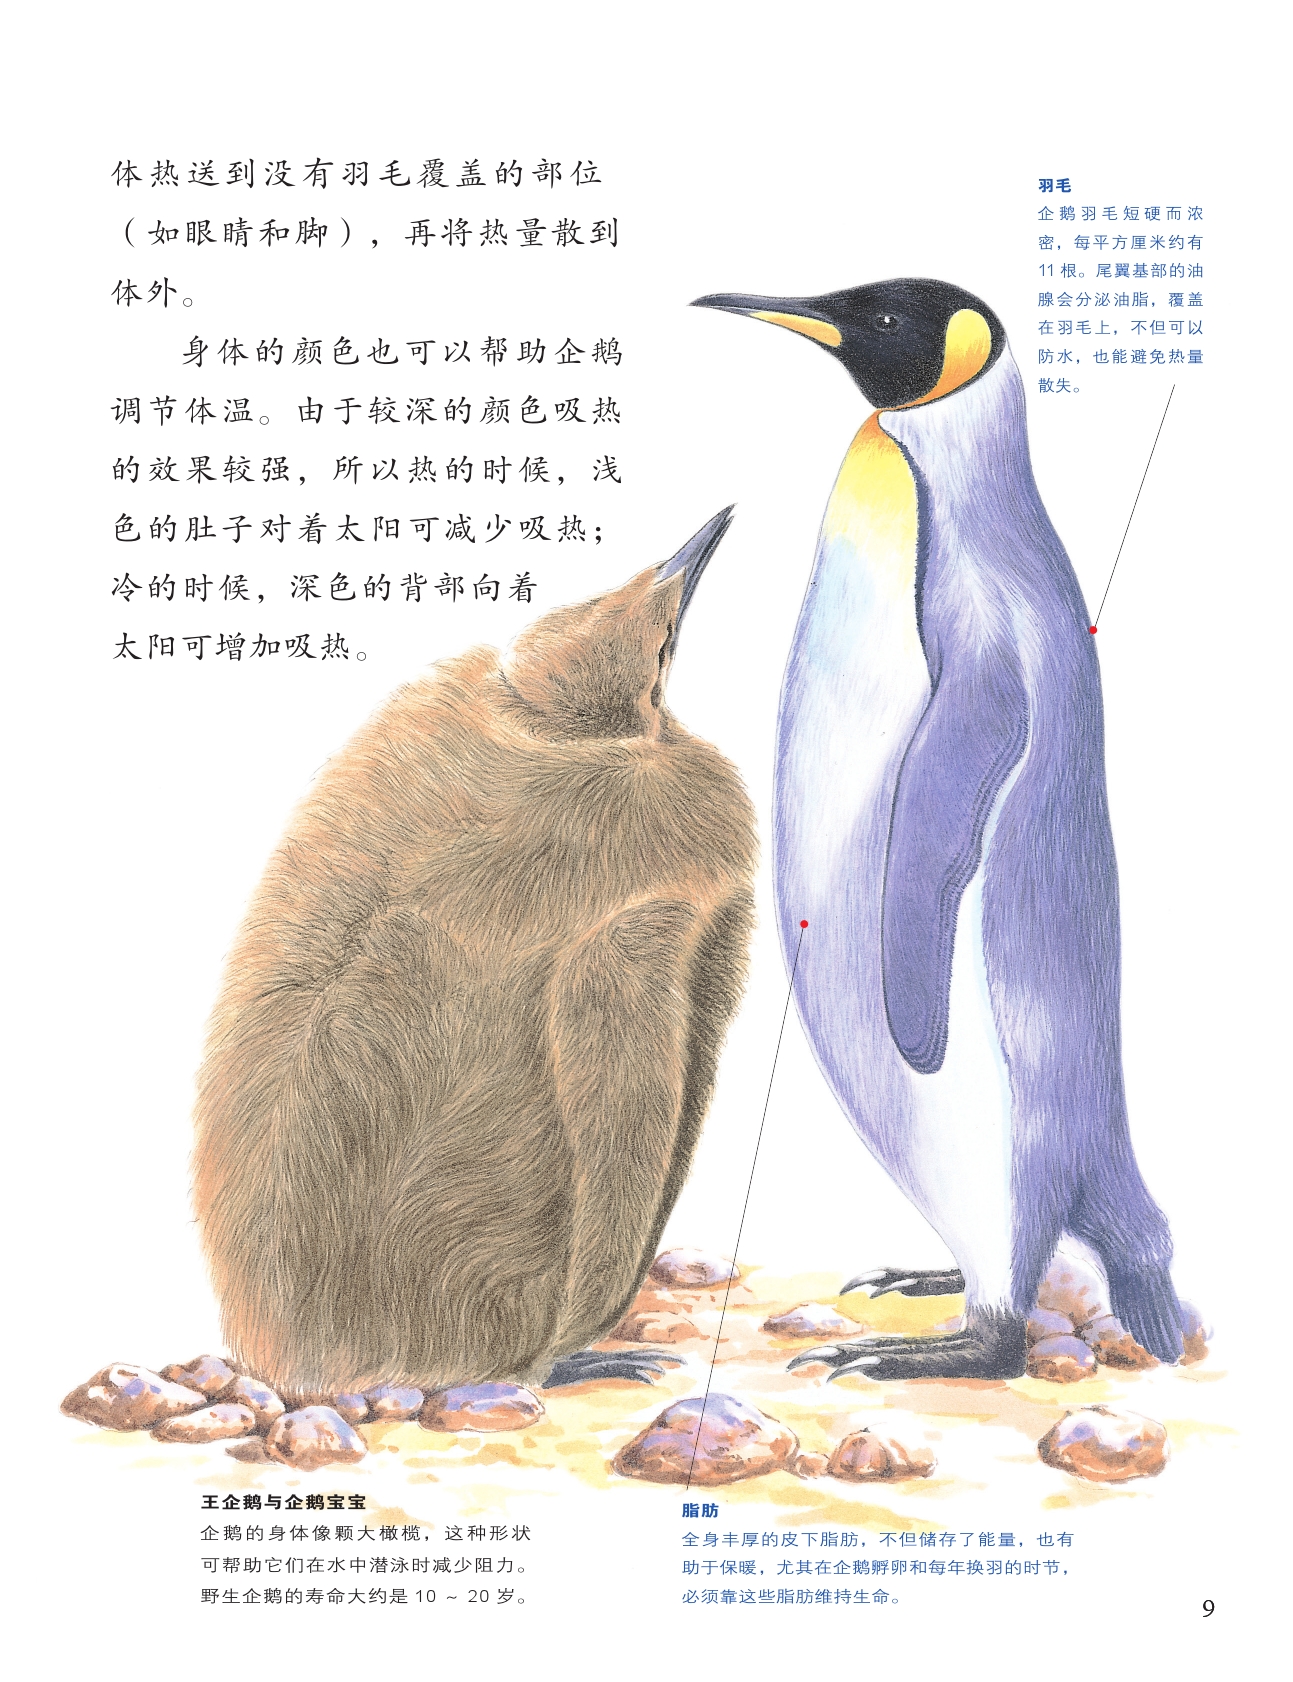 绘本连载 小牛顿科学全知道1 王企鹅与我 3-6岁 亲子阅读